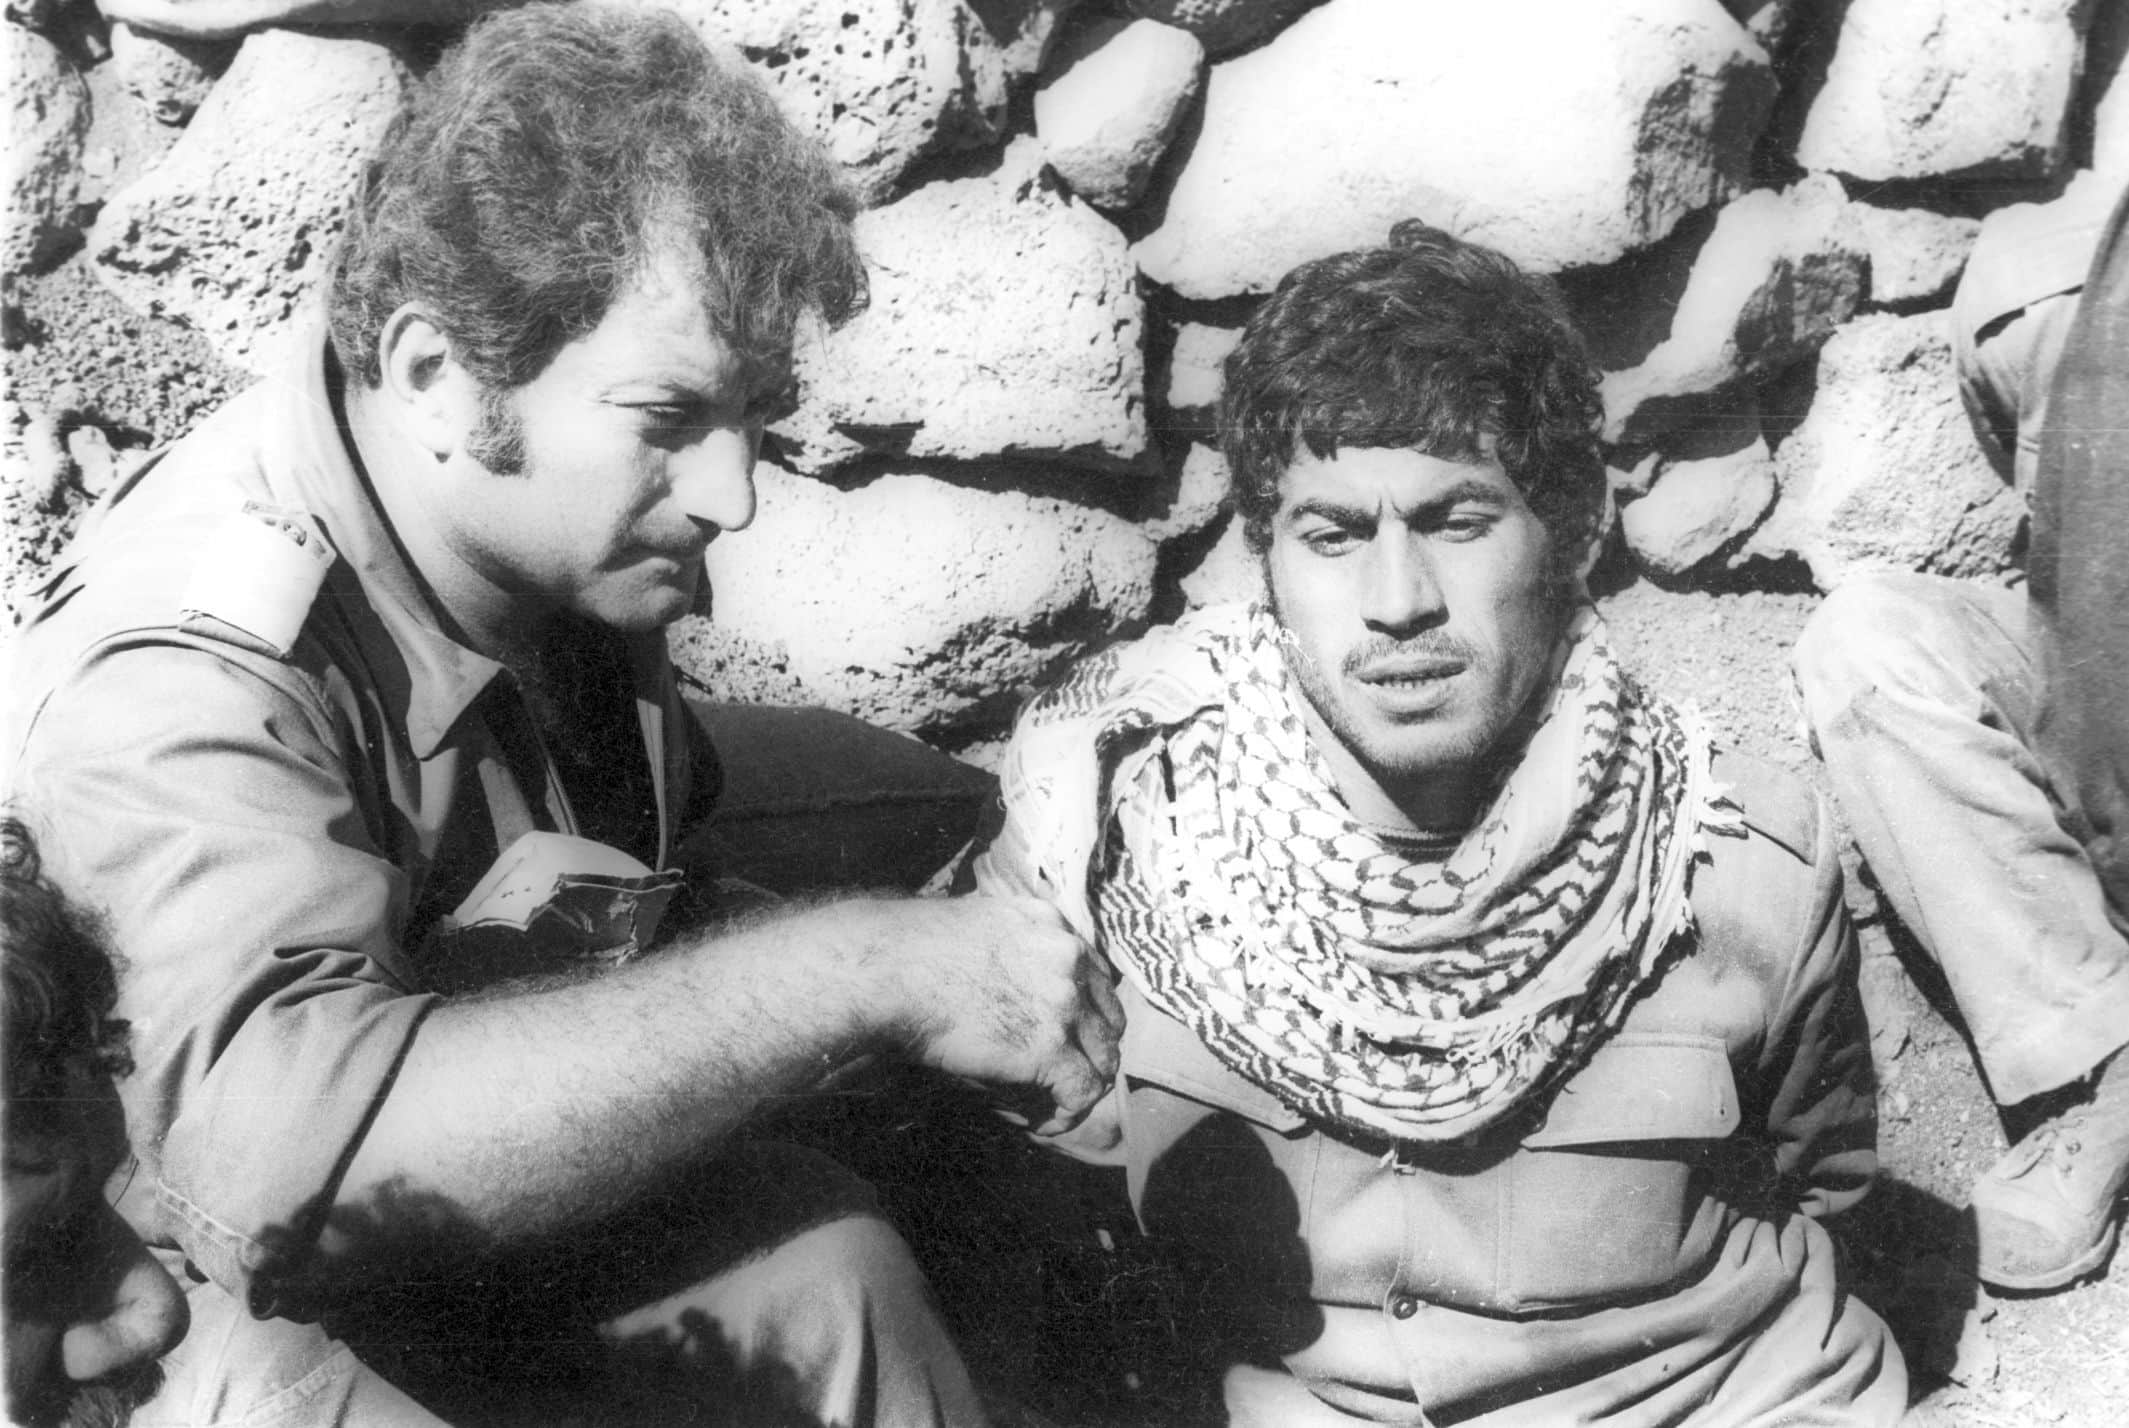 אלי לנדאו במלחמת יום הכיפורים, מגיש מים לשבוי מצרי, 17 באוקטובר 1973 (צילום: IPPA, אוסף דן הדני, הספרייה הלאומית)